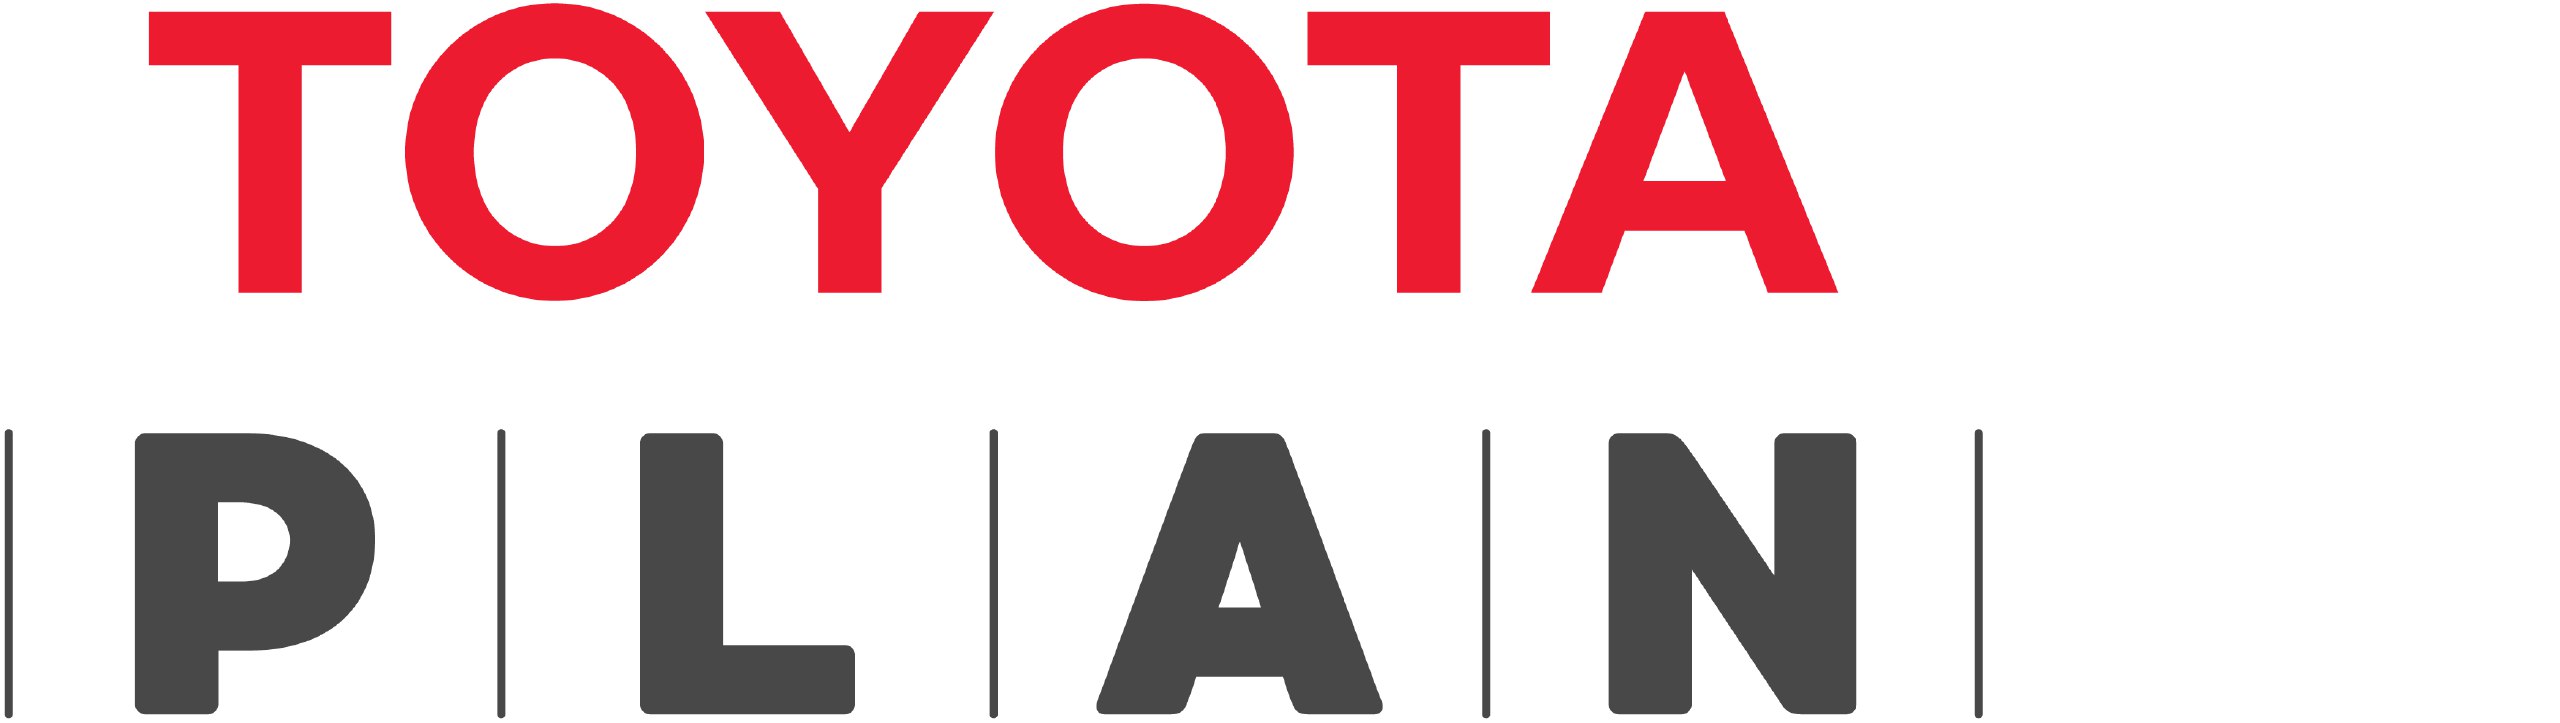 Mi Plan Toyota – Toyota Yacopini